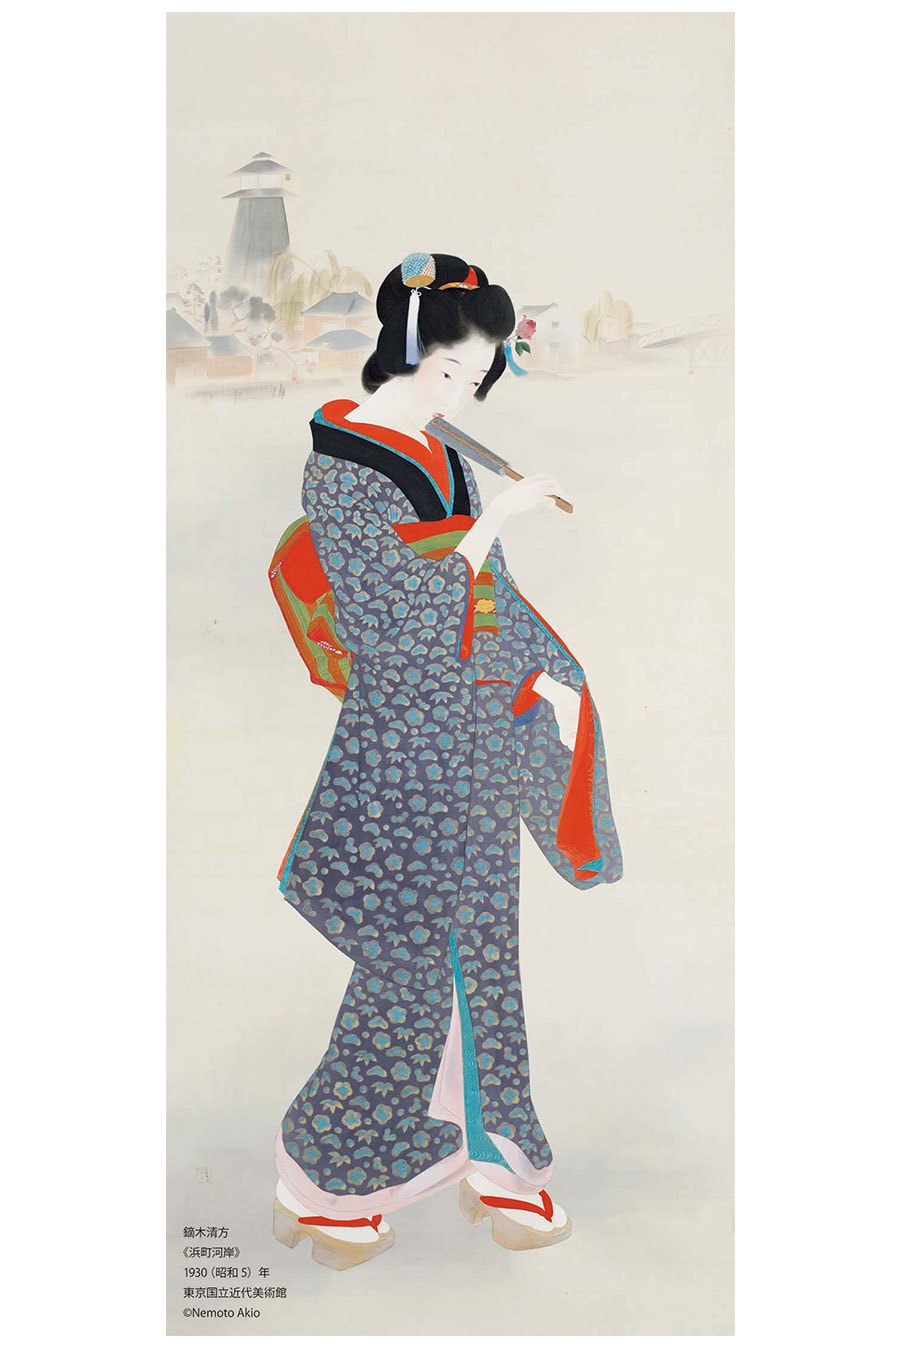 鏑木清方《浜町河岸》1930(昭和5)年、東京国立近代美術館、通期展示、絹本彩色・軸、173.5×74.0cm ©Nemoto Akio